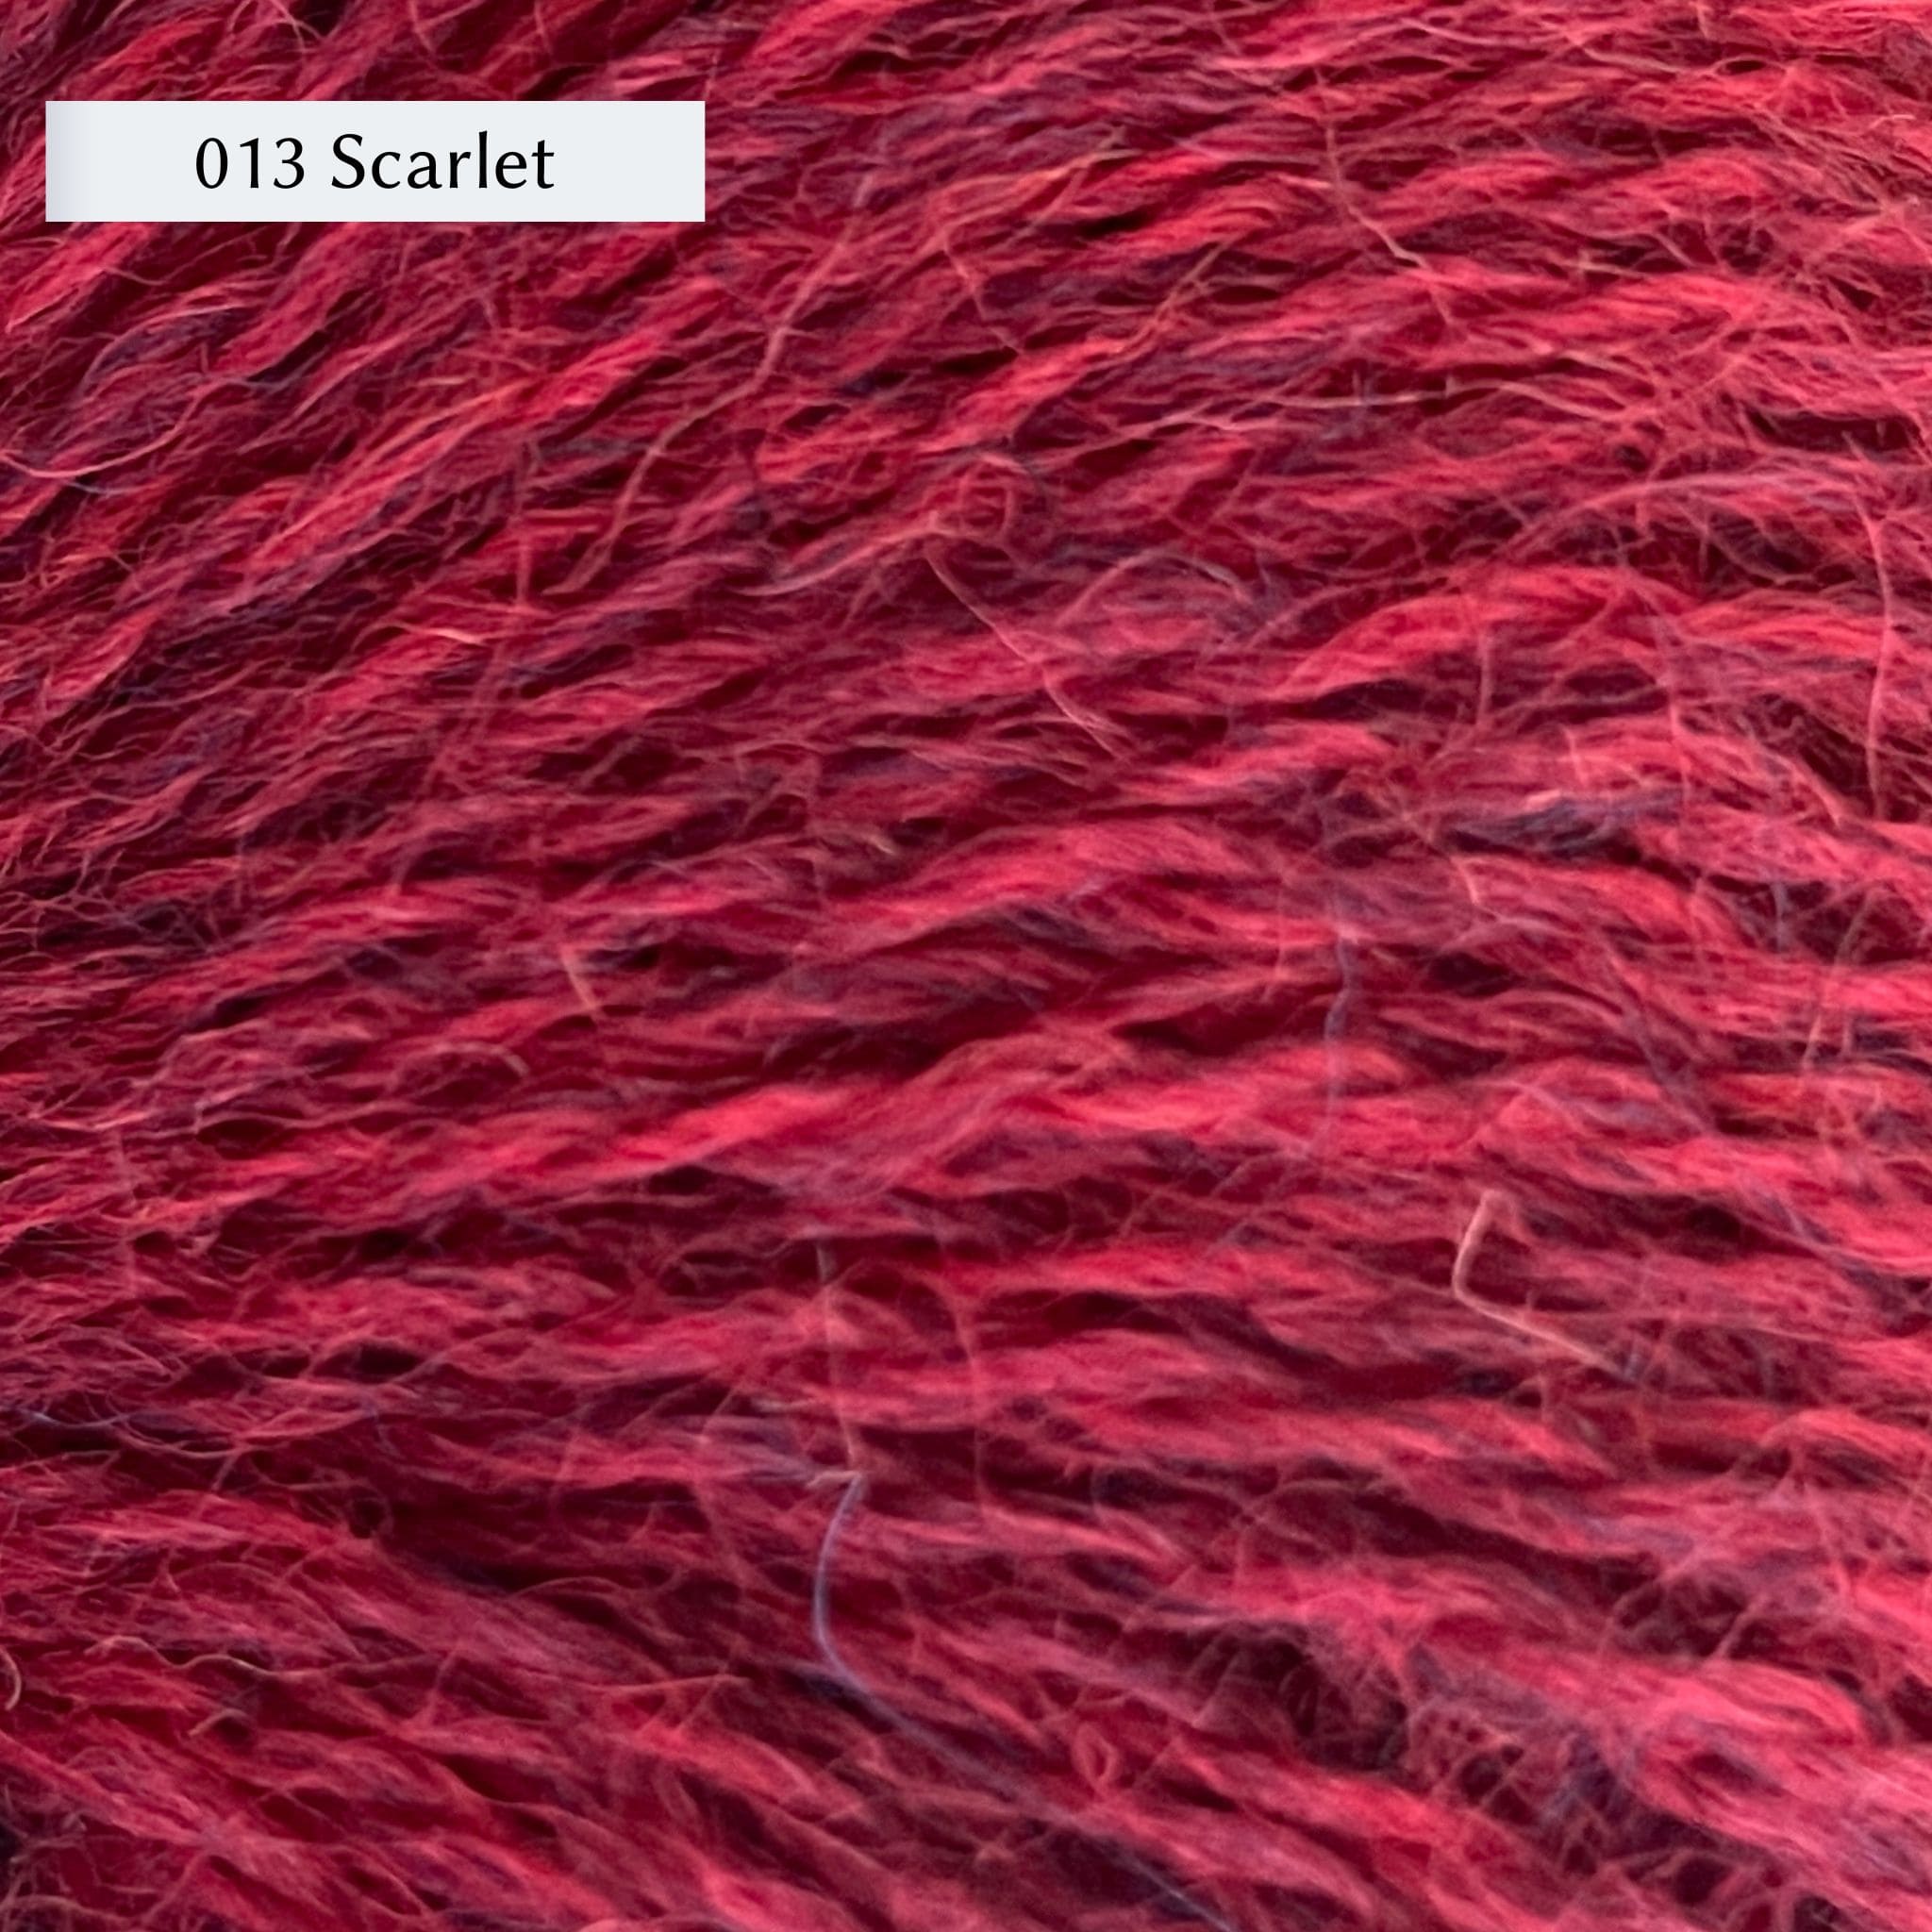 Wensleydale Longwool Sheep Shop Tweed 4 ply, a fingering weight yarn, in color 013 Scarlet, a heathered medium-dark red